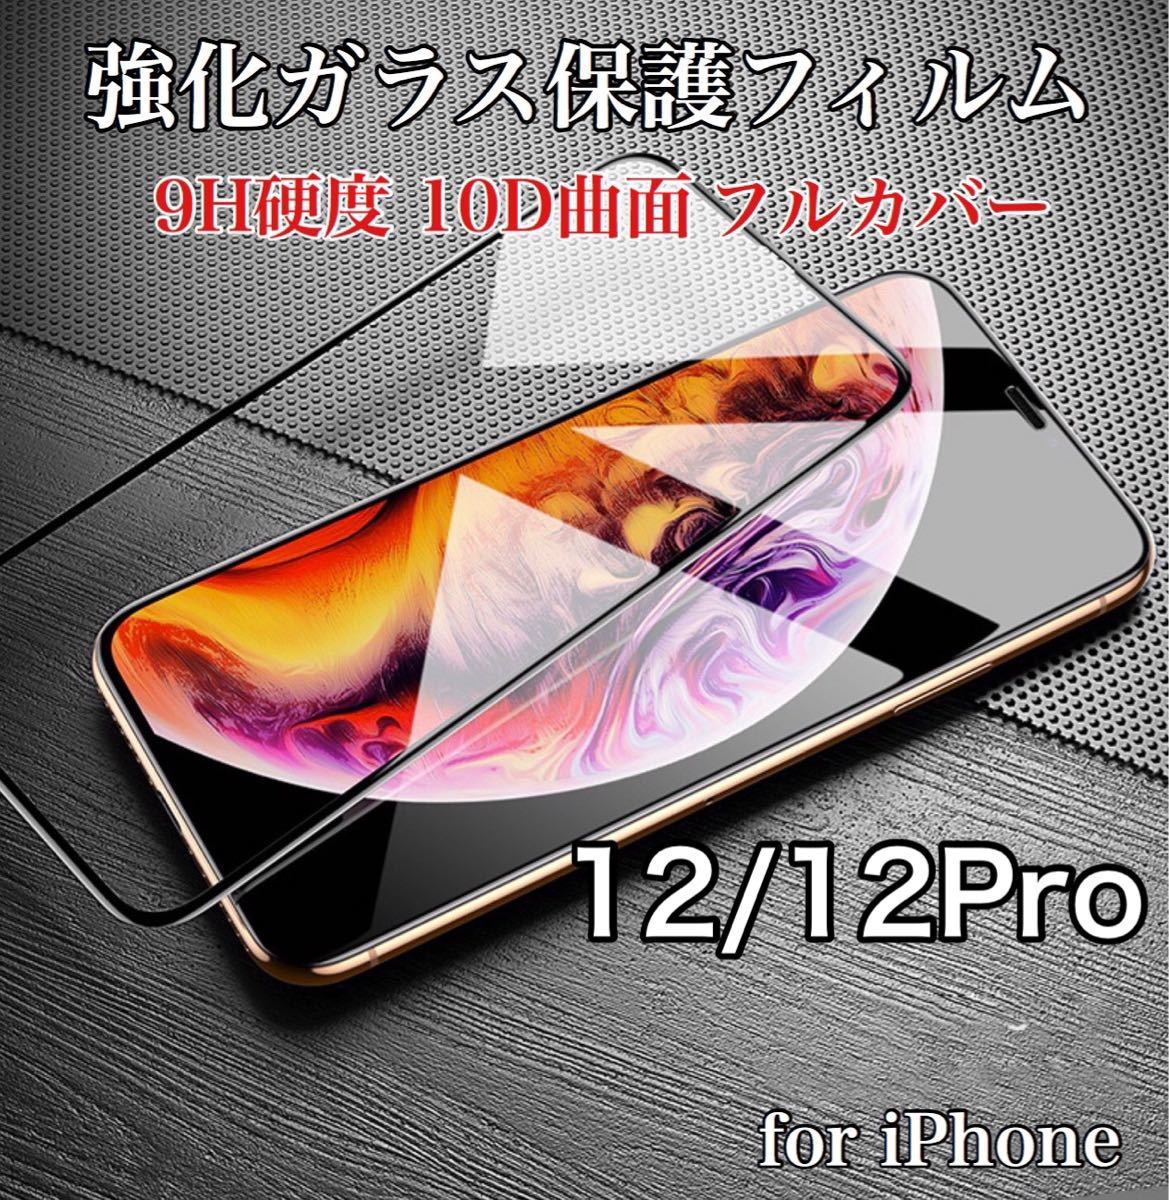 高清 超透明タイプ iPhoneフィルム 9H 強化ガラス 液晶保護 10D曲面 全面保護 iPhone12/12Pro